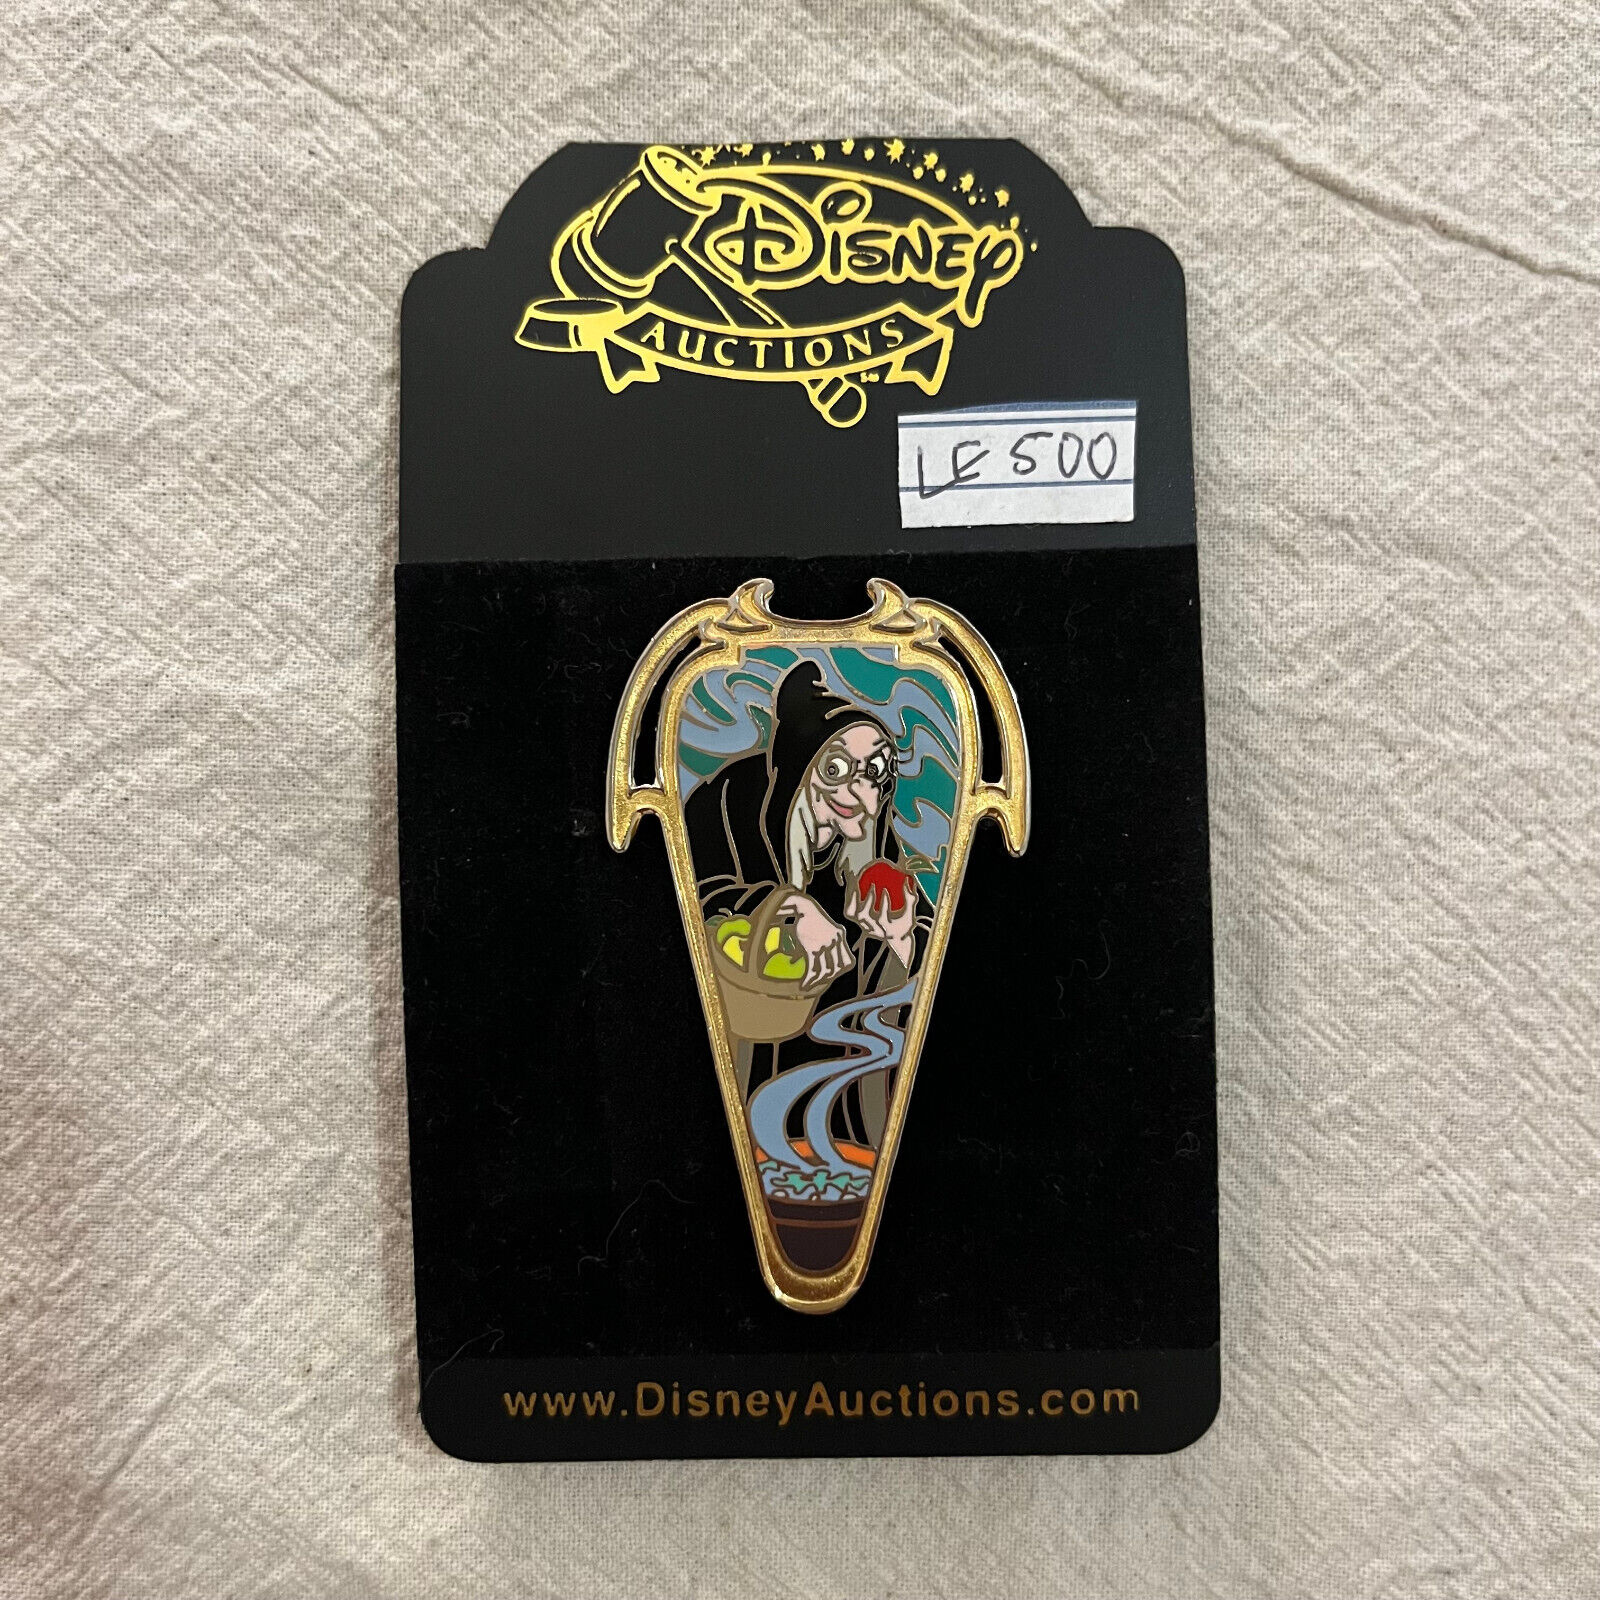 LIMITED EDITION Disney Auctions Art Nouveau Old Hag Snow White Disney Pin LE 500